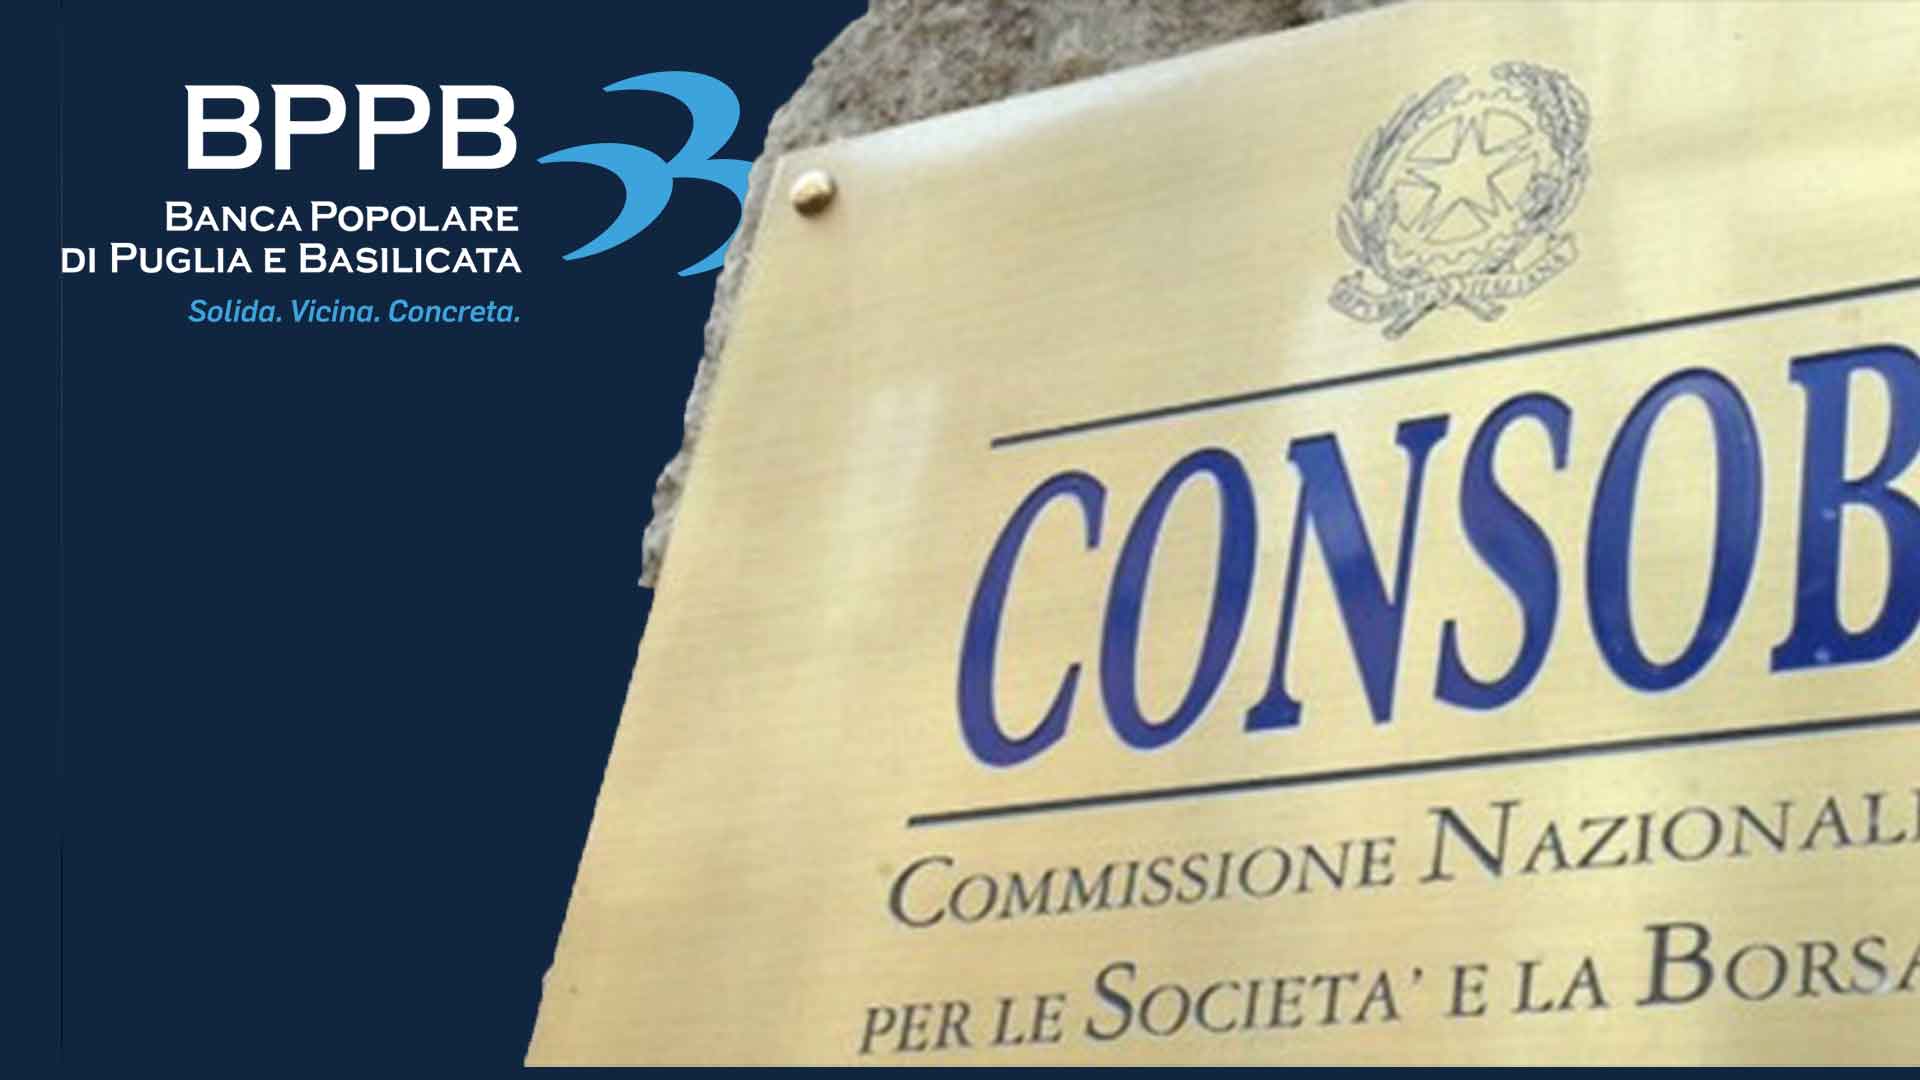 Arbitro Consob condanna Banca Popolare Puglia e Basilicata